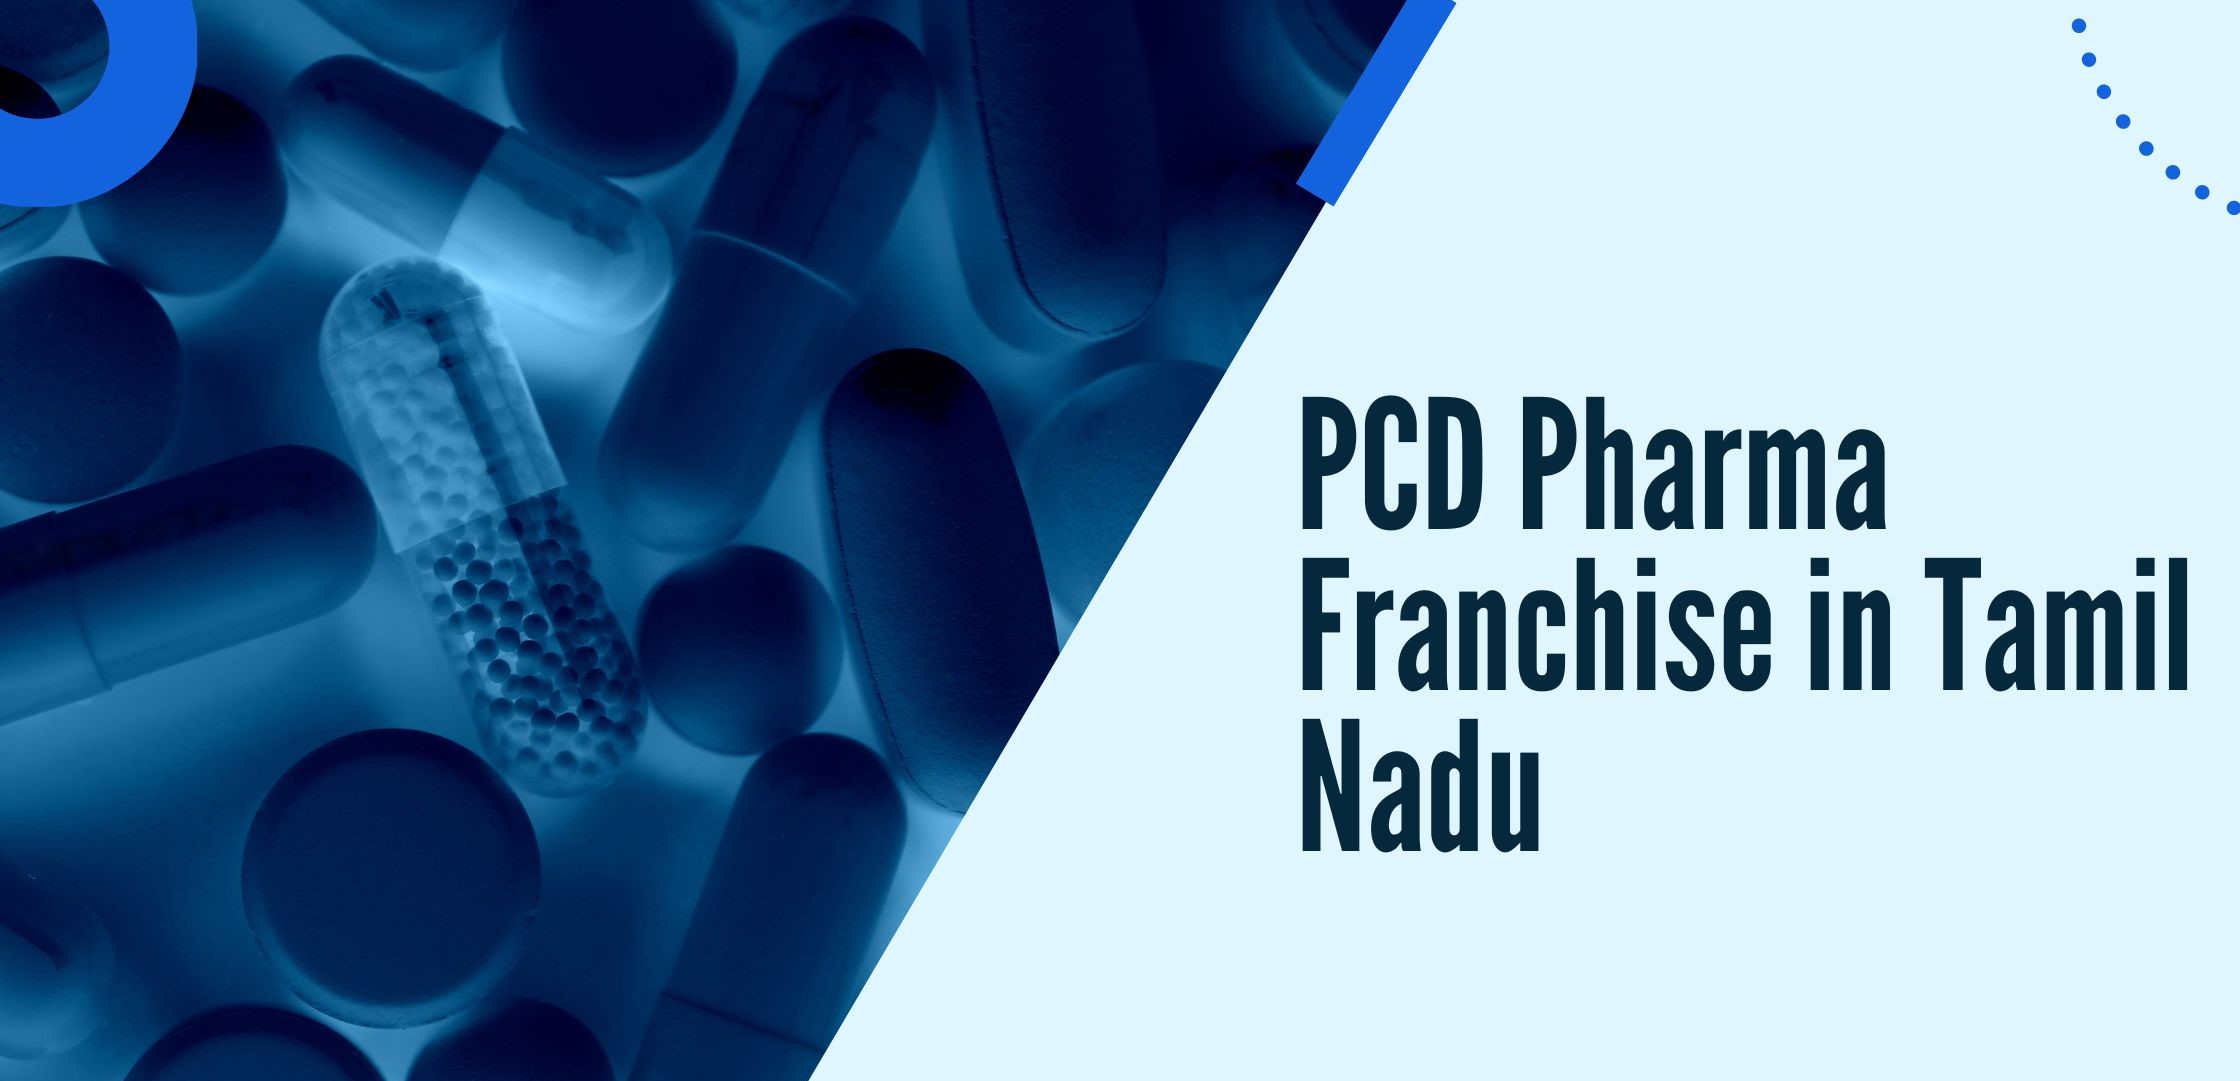 PCD Pharma Franchise In Tamil Nadu